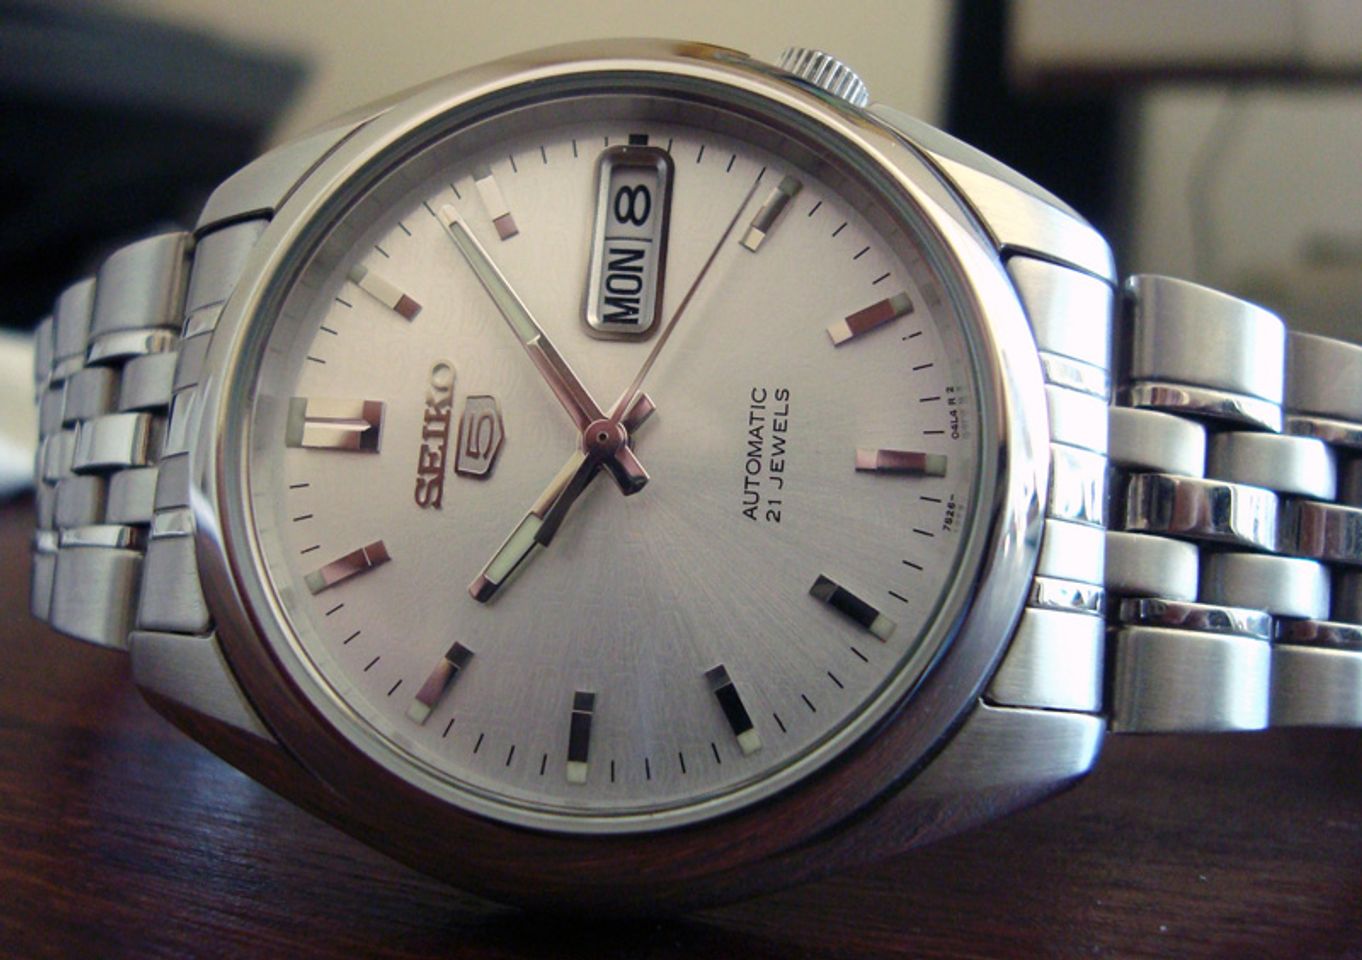 Đồng hồ Seiko 5 SNK355k1 xịn, giá bình dân